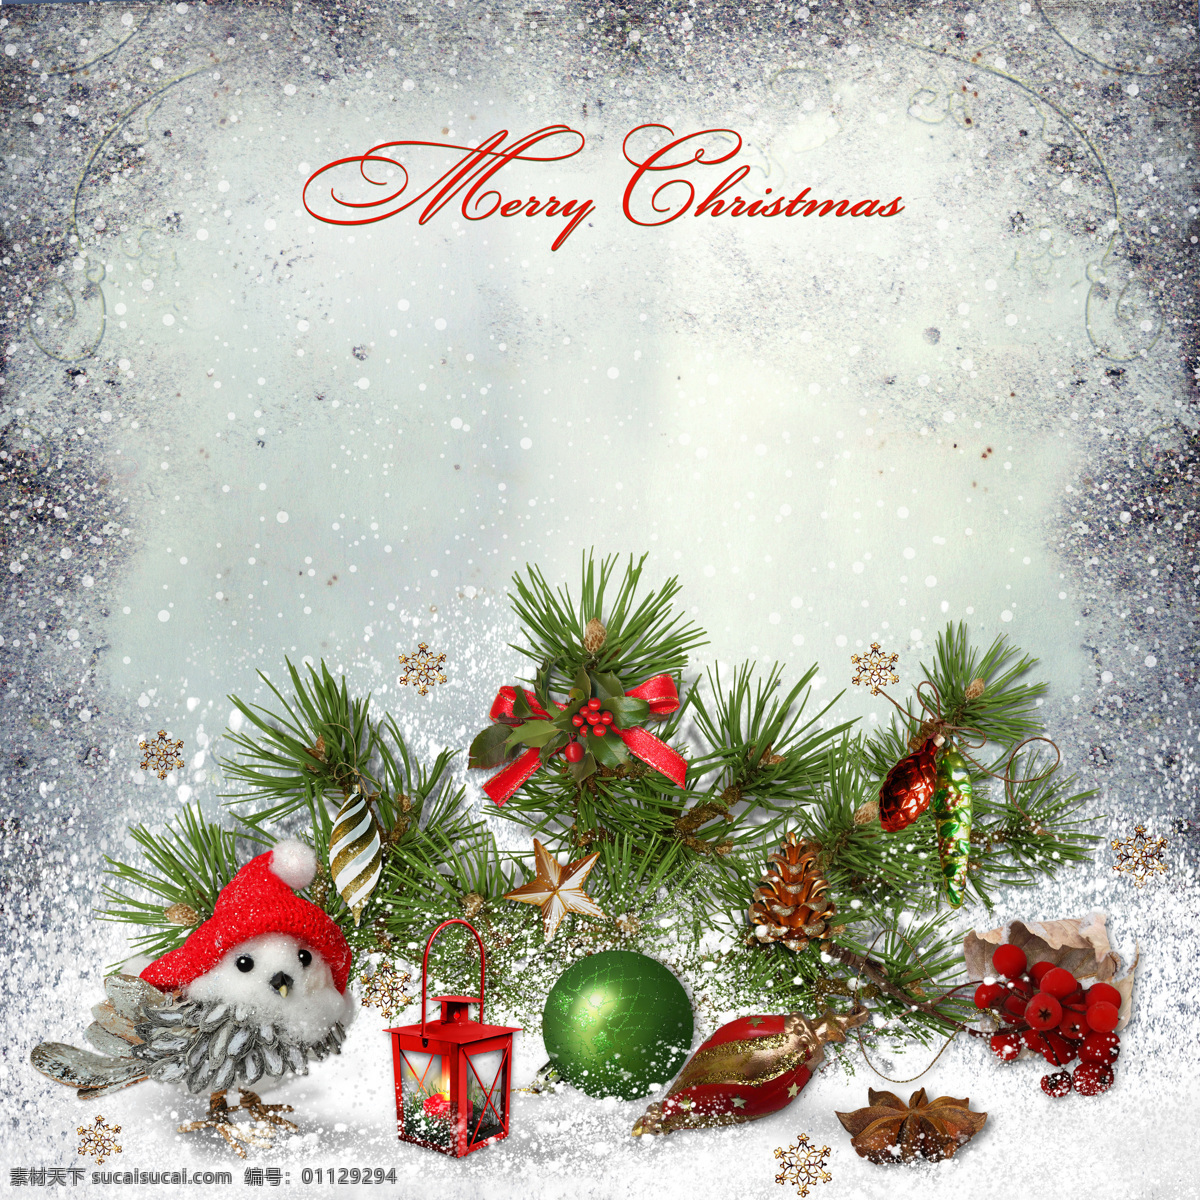 漂亮 圣诞 装饰品 背景 素材图片 松枝 八角茴香 灯 圣诞吊球 背景素材 节日庆典 生活百科